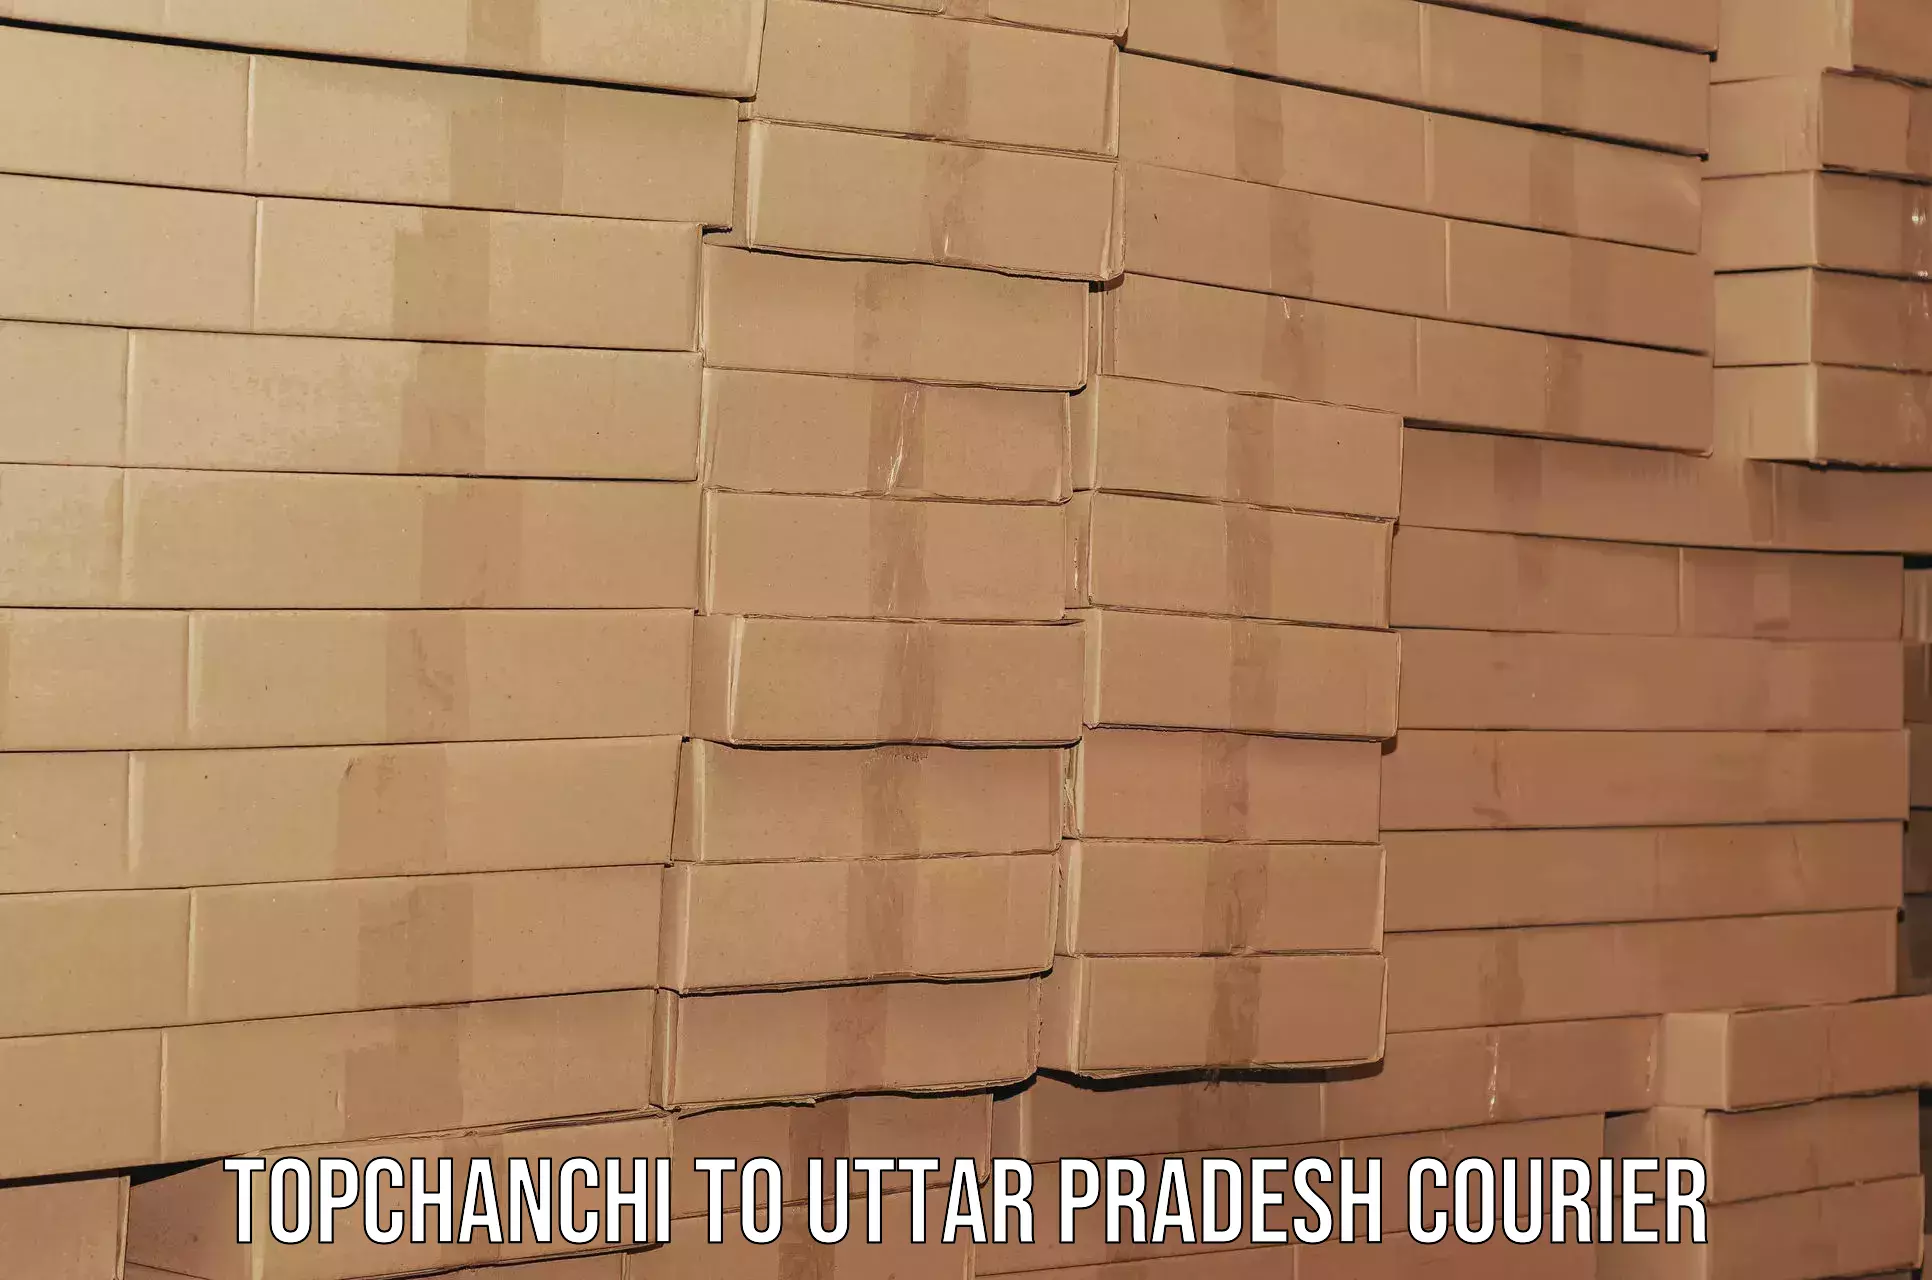 Furniture moving plans Topchanchi to Pratapgarh